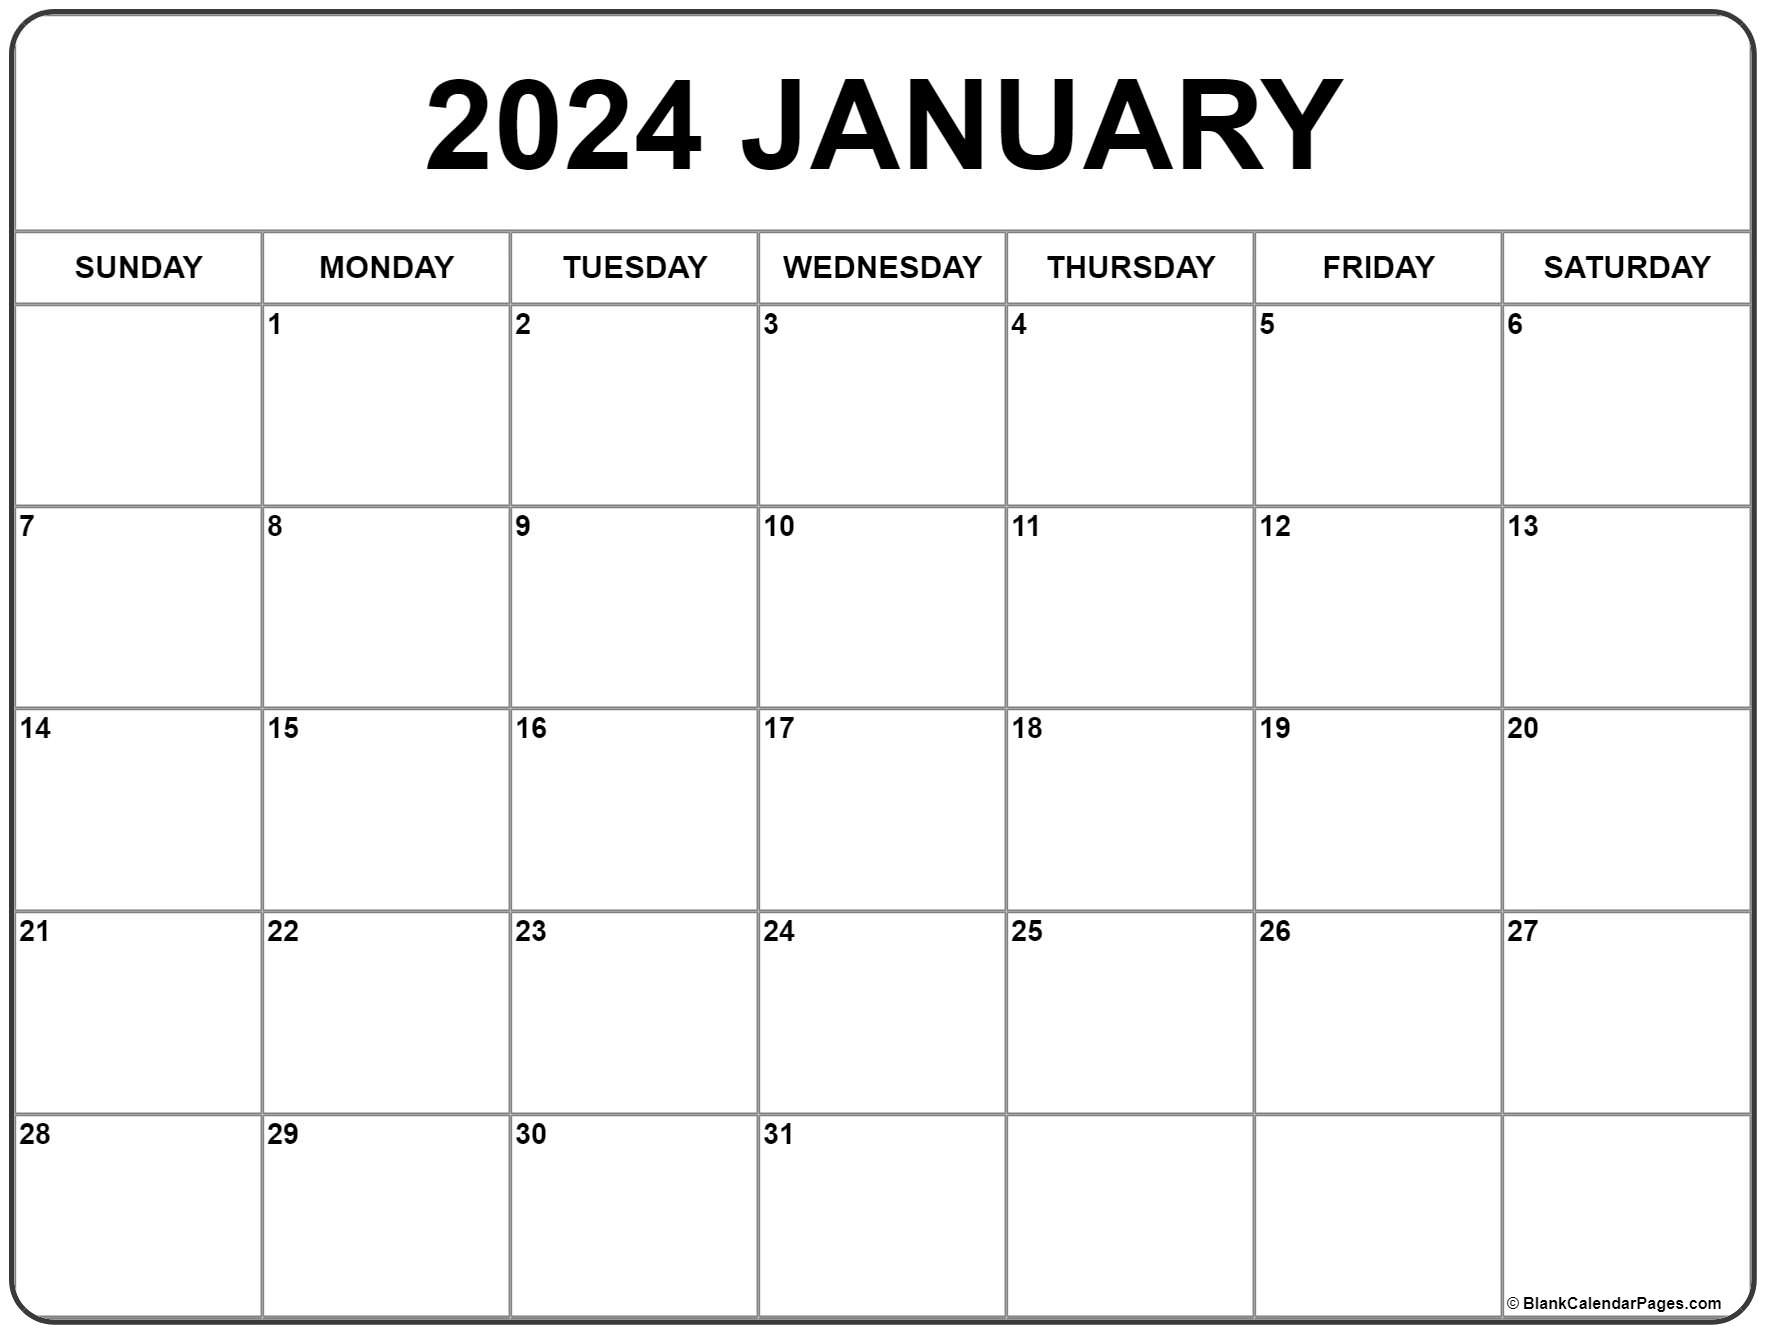 January 2024 Calendar | Free Printable Calendar for A Printable Calendar January 2024